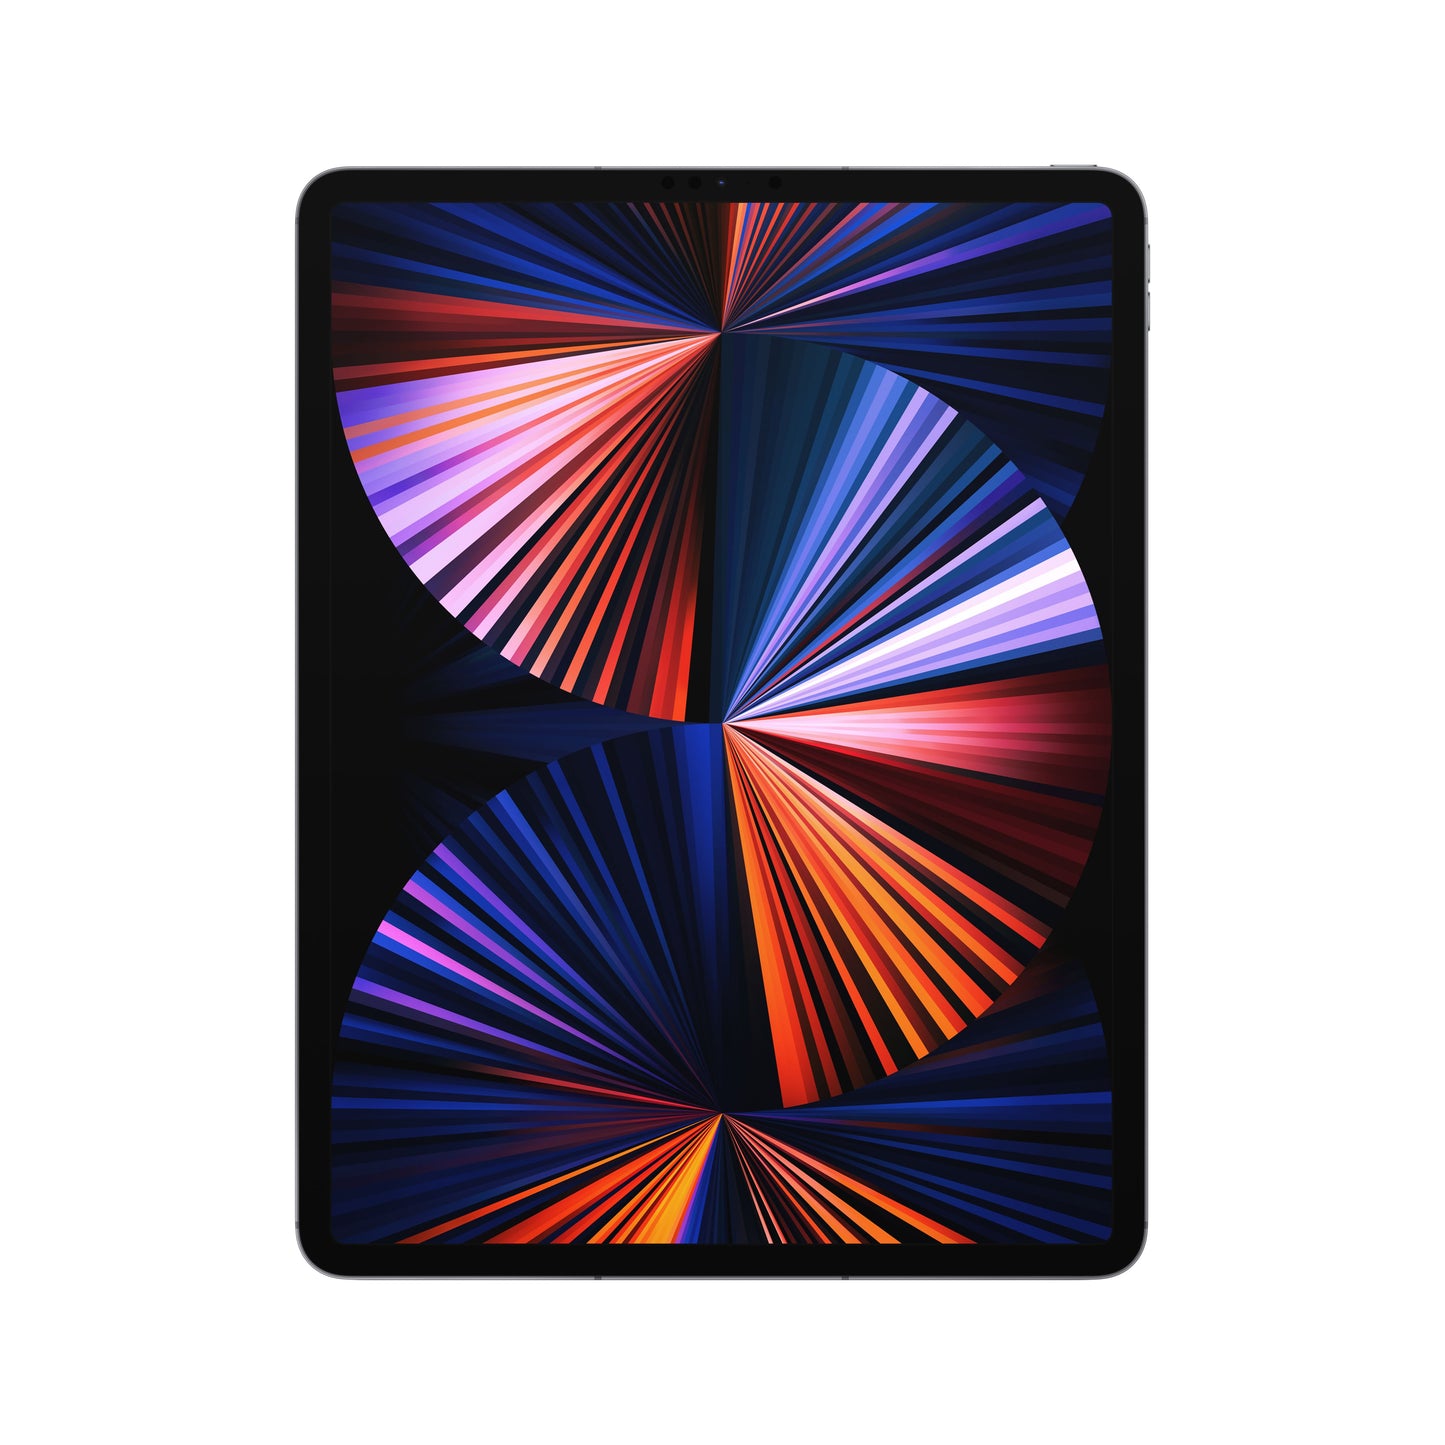 iPad Pro de 12,9 pulgadas, Gris espacial, 2 TB, Wi-Fi + Cellular - Rossellimac